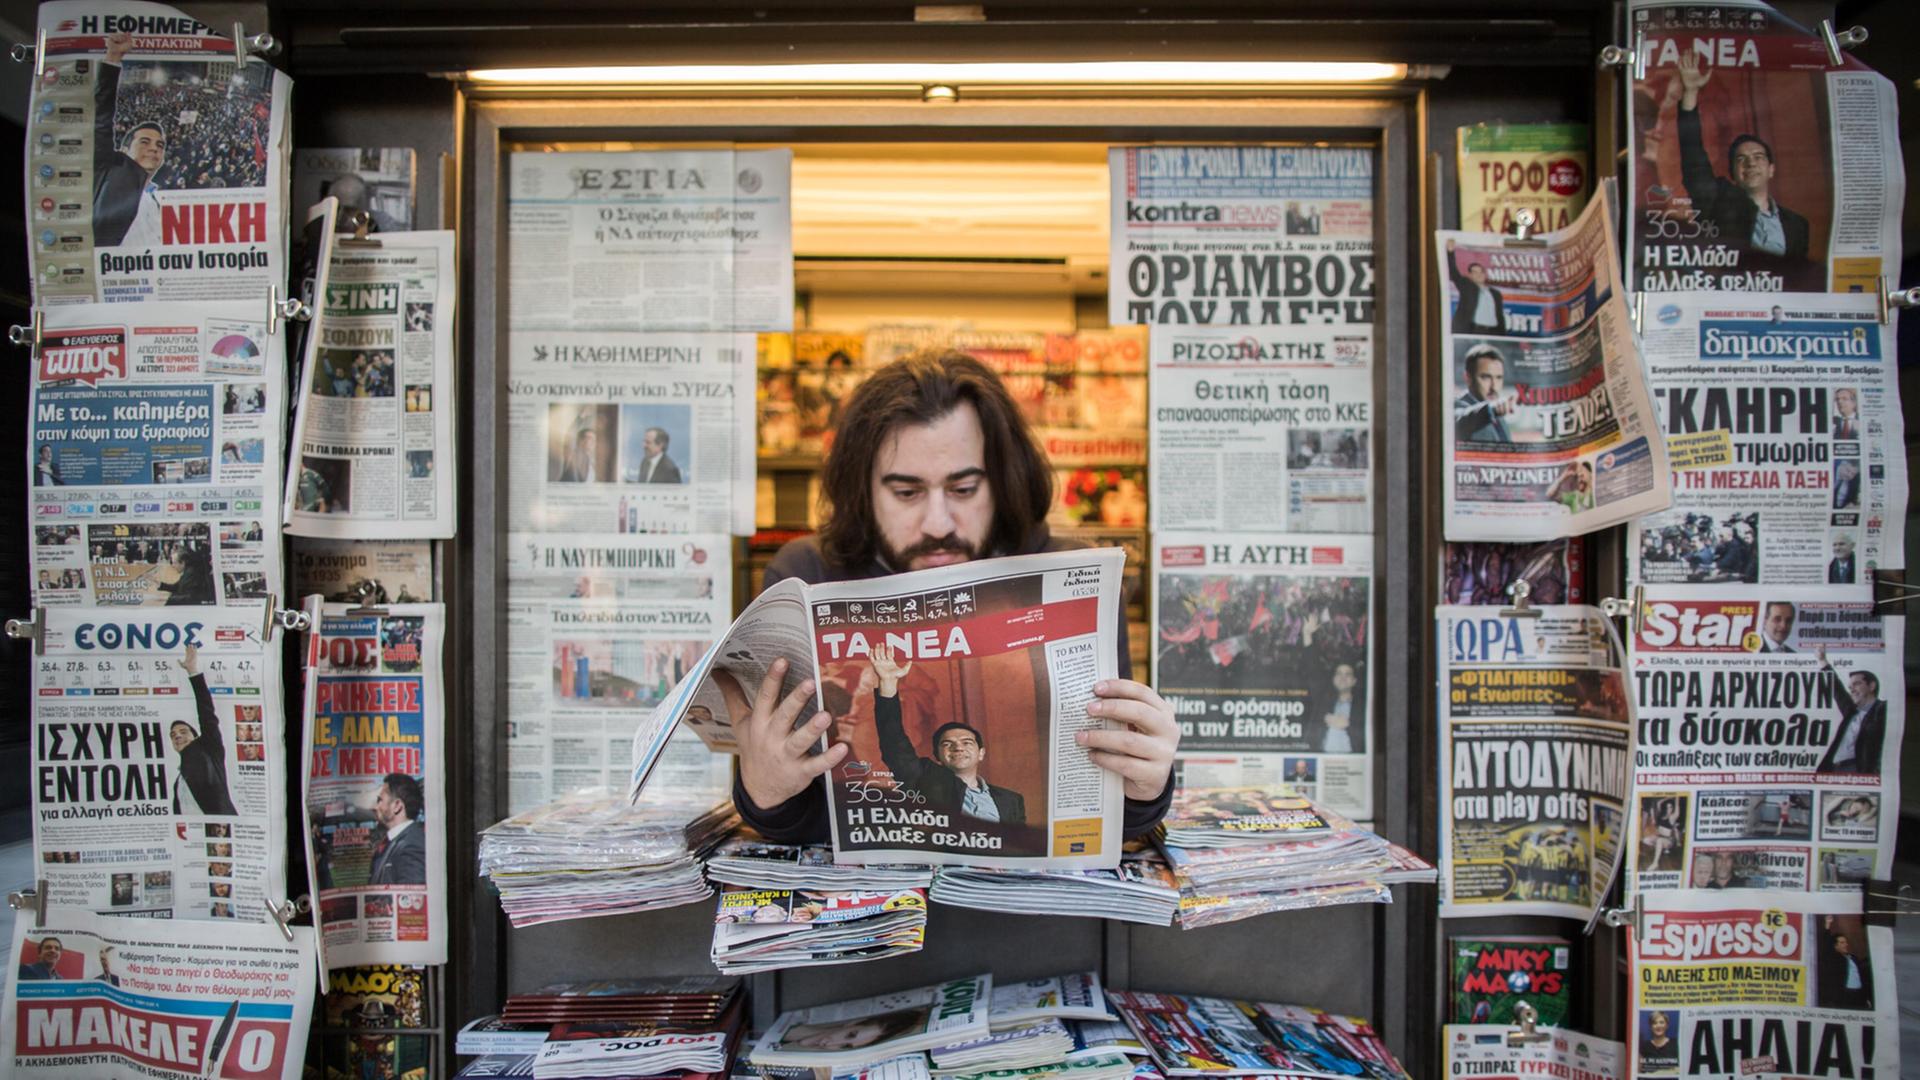 Die Parlamentswahl beschäftigt viele griechische Zeitungen - hier ein Kiosk in Athen